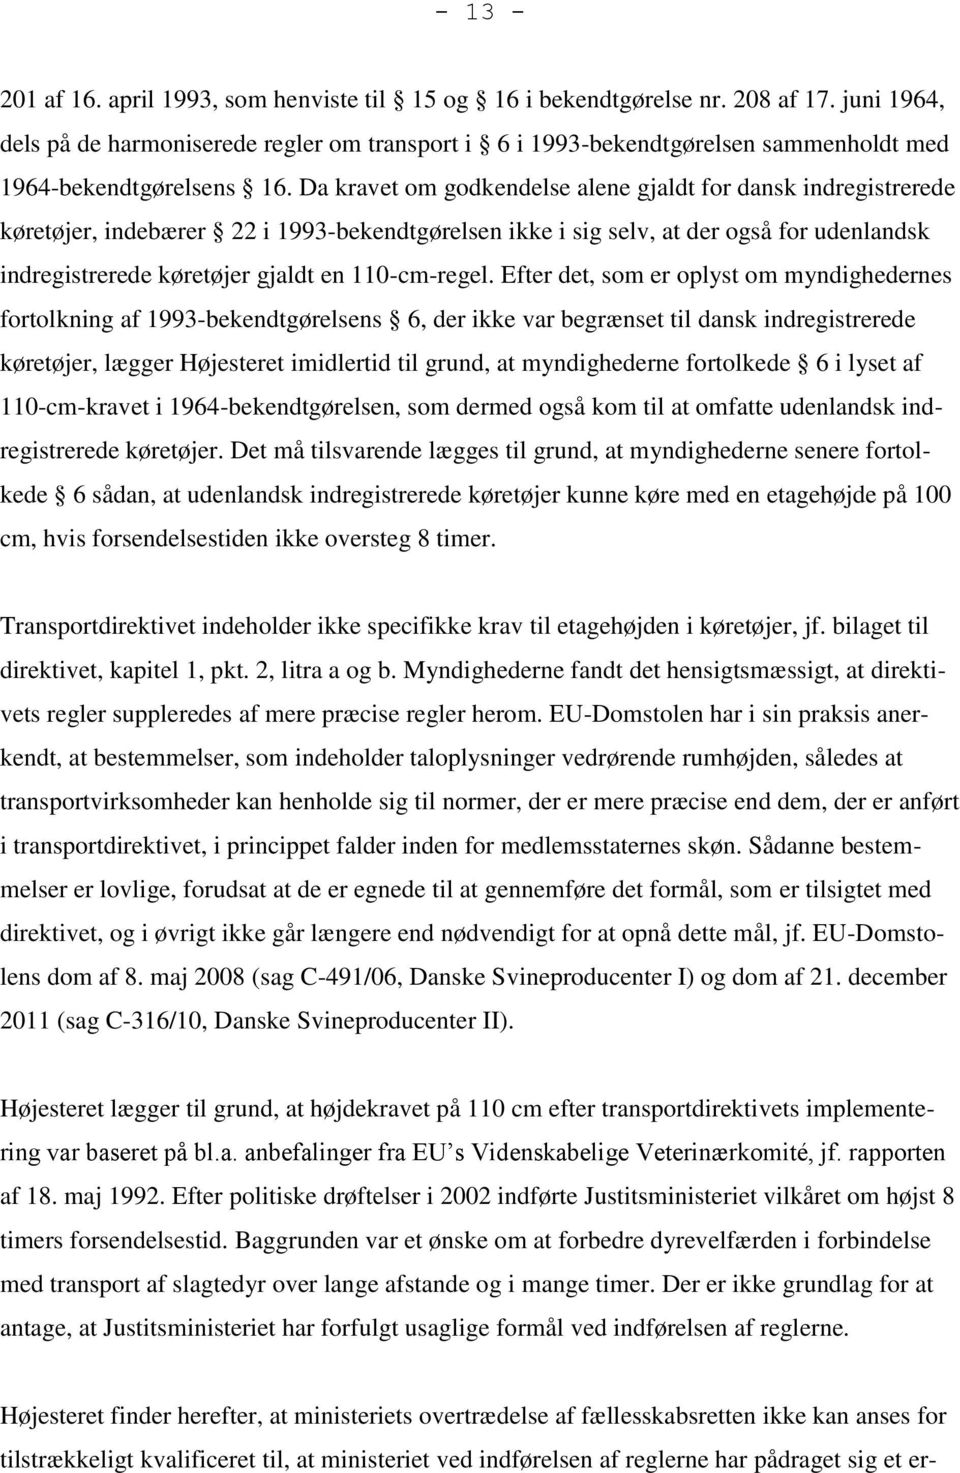 Da kravet om godkendelse alene gjaldt for dansk indregistrerede køretøjer, indebærer 22 i 1993-bekendtgørelsen ikke i sig selv, at der også for udenlandsk indregistrerede køretøjer gjaldt en